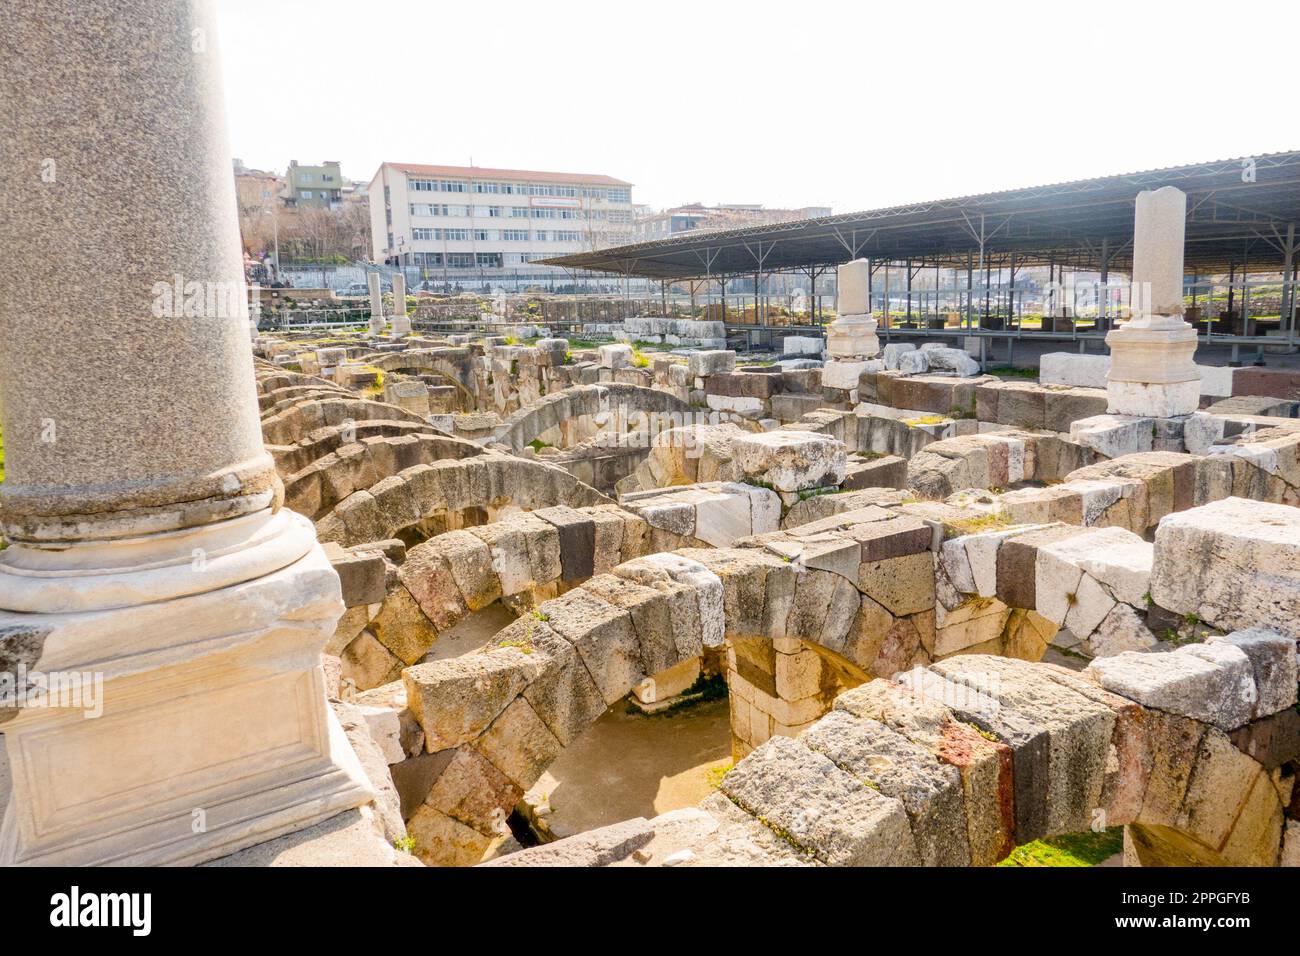 Agora Ören Yeri in Izmir, Türkei, ist eine herrliche antike Stätte, die die Überreste eines einst großen Marktplatzes und kulturellen Knotenpunkts zeigt. Stockfoto